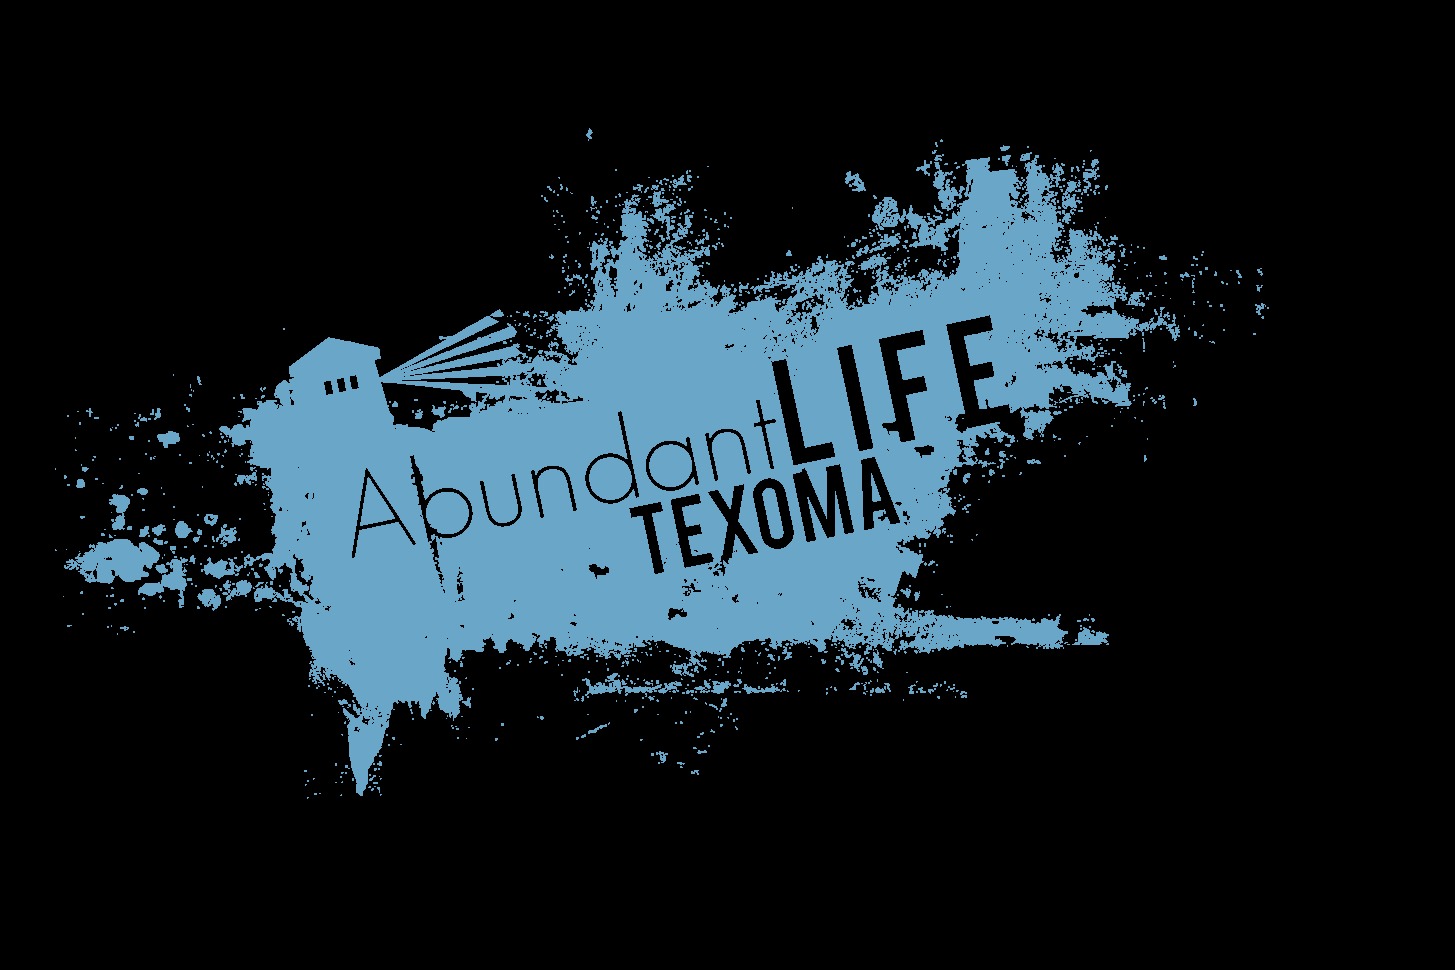 Abundant Life Texoma